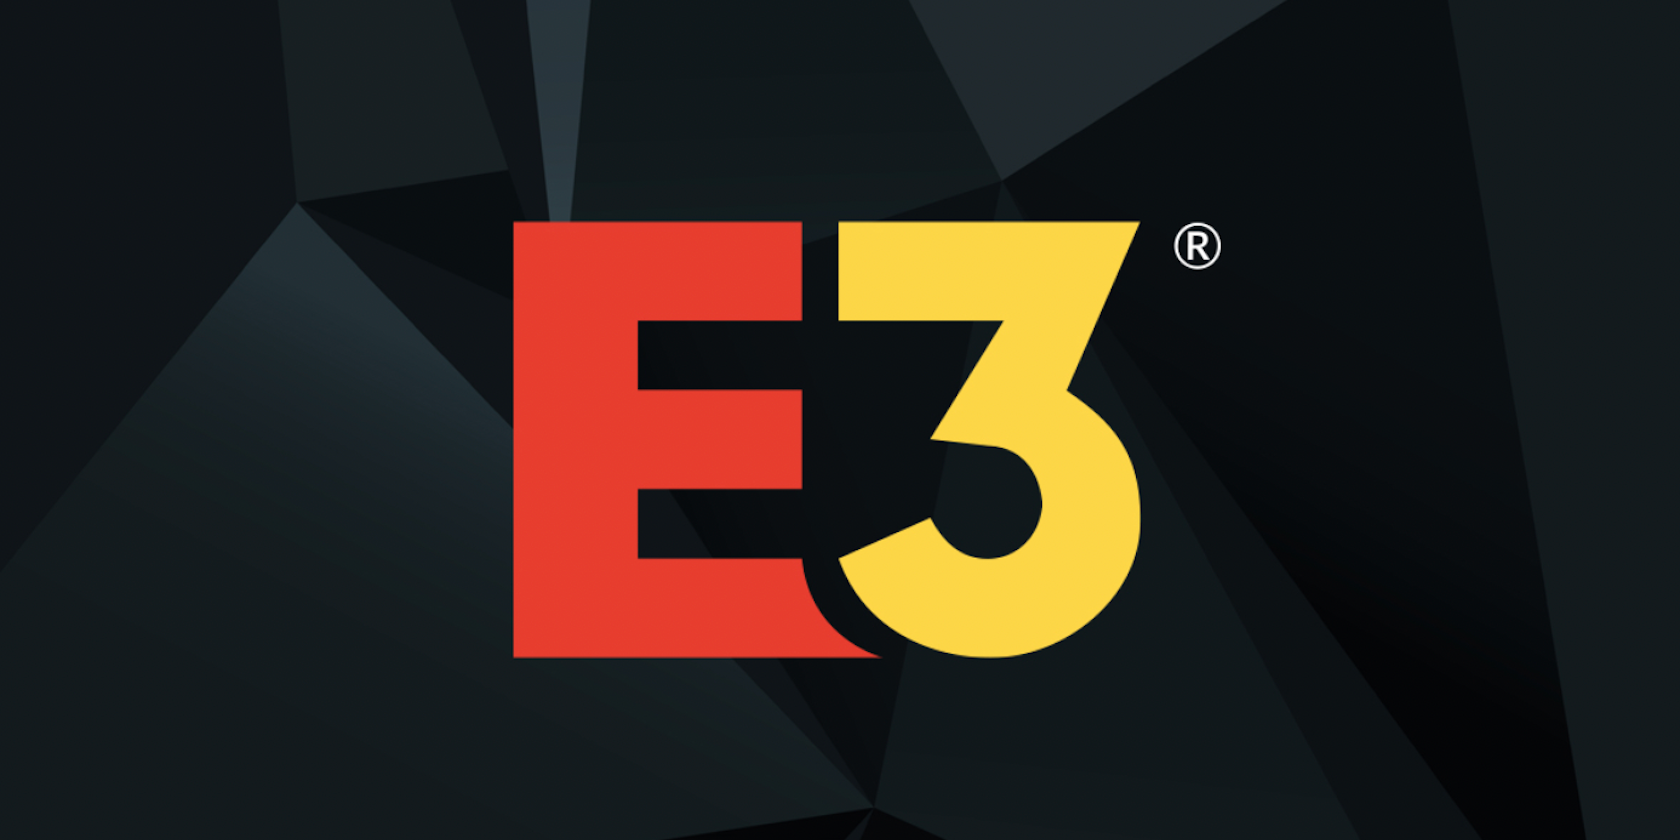 The E3 logo.